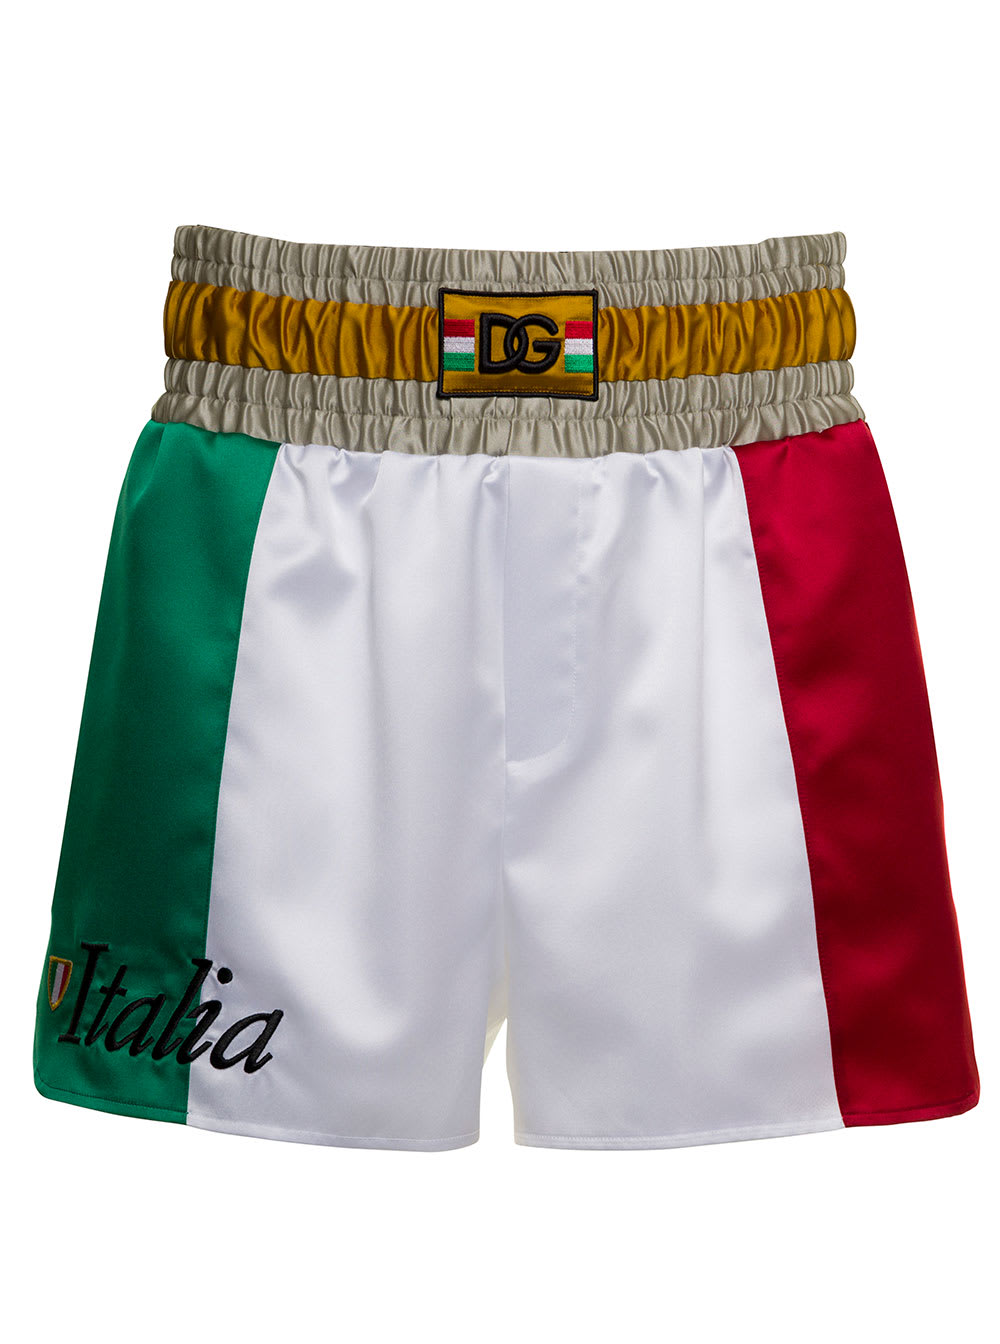 Italy Dolce & Gabbana Man Bermuda Shorts